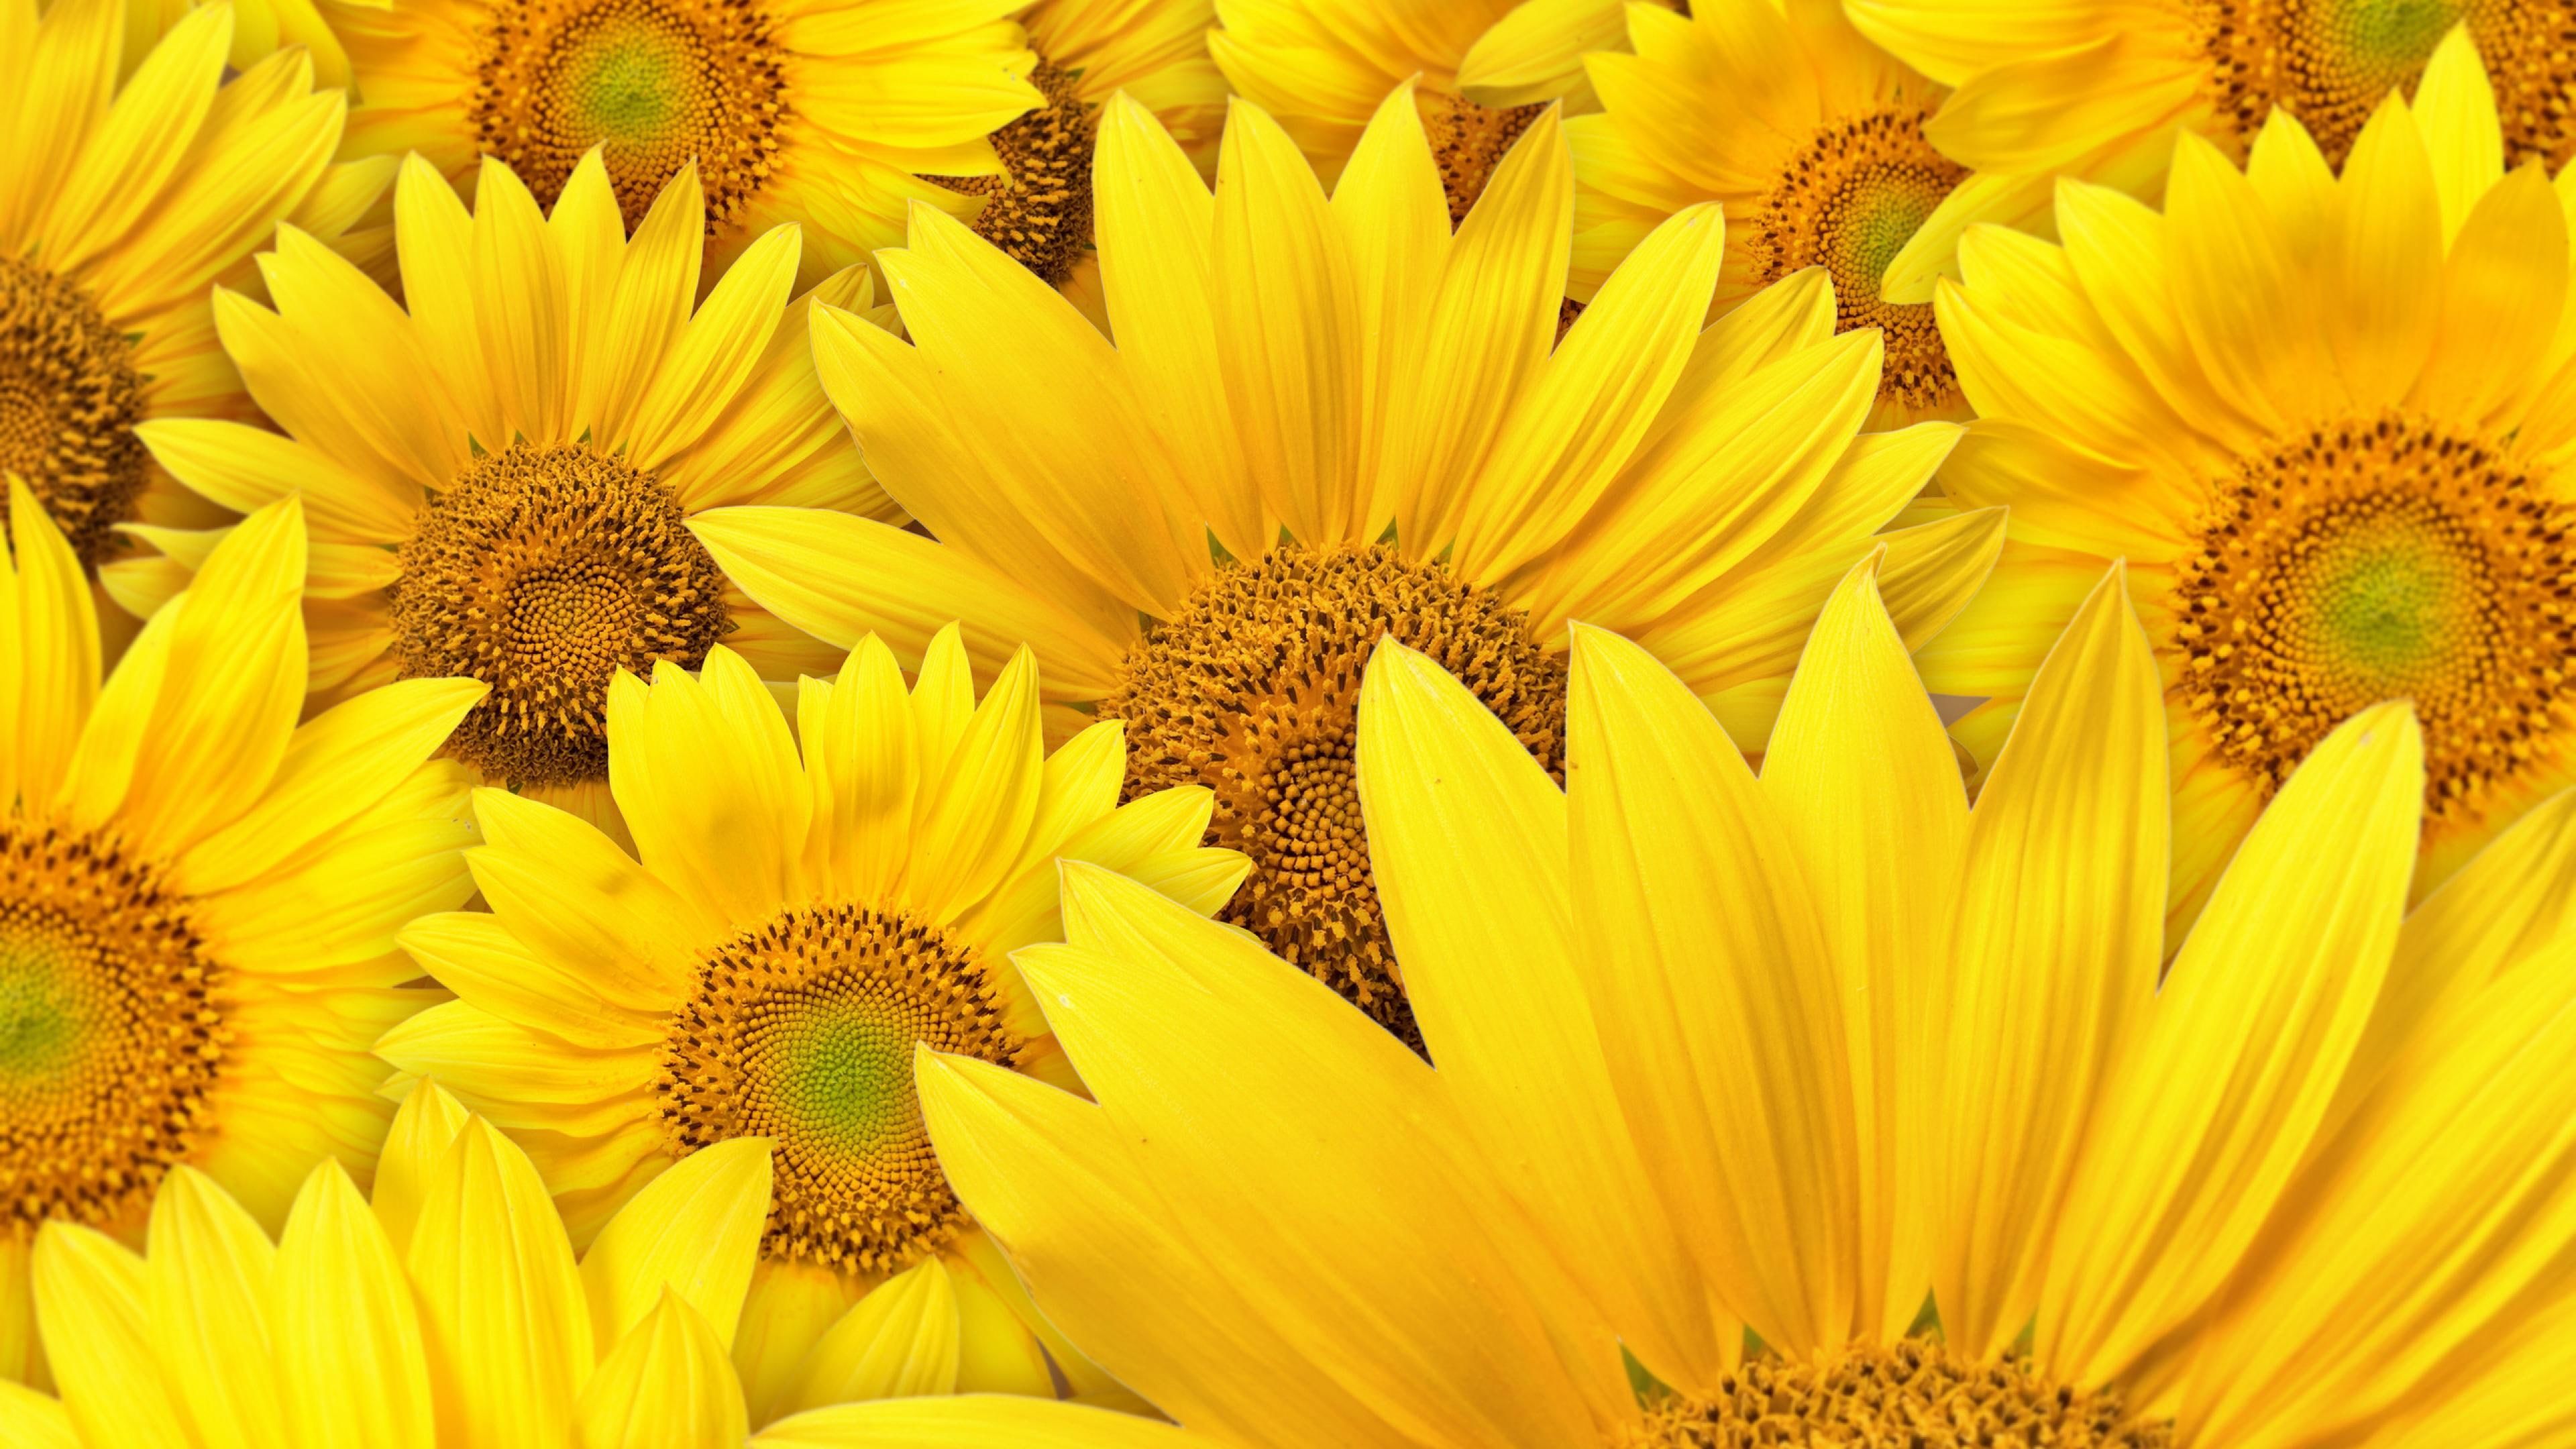 sunflower #yellow #flower #plant #petal #summer #blossom #sun